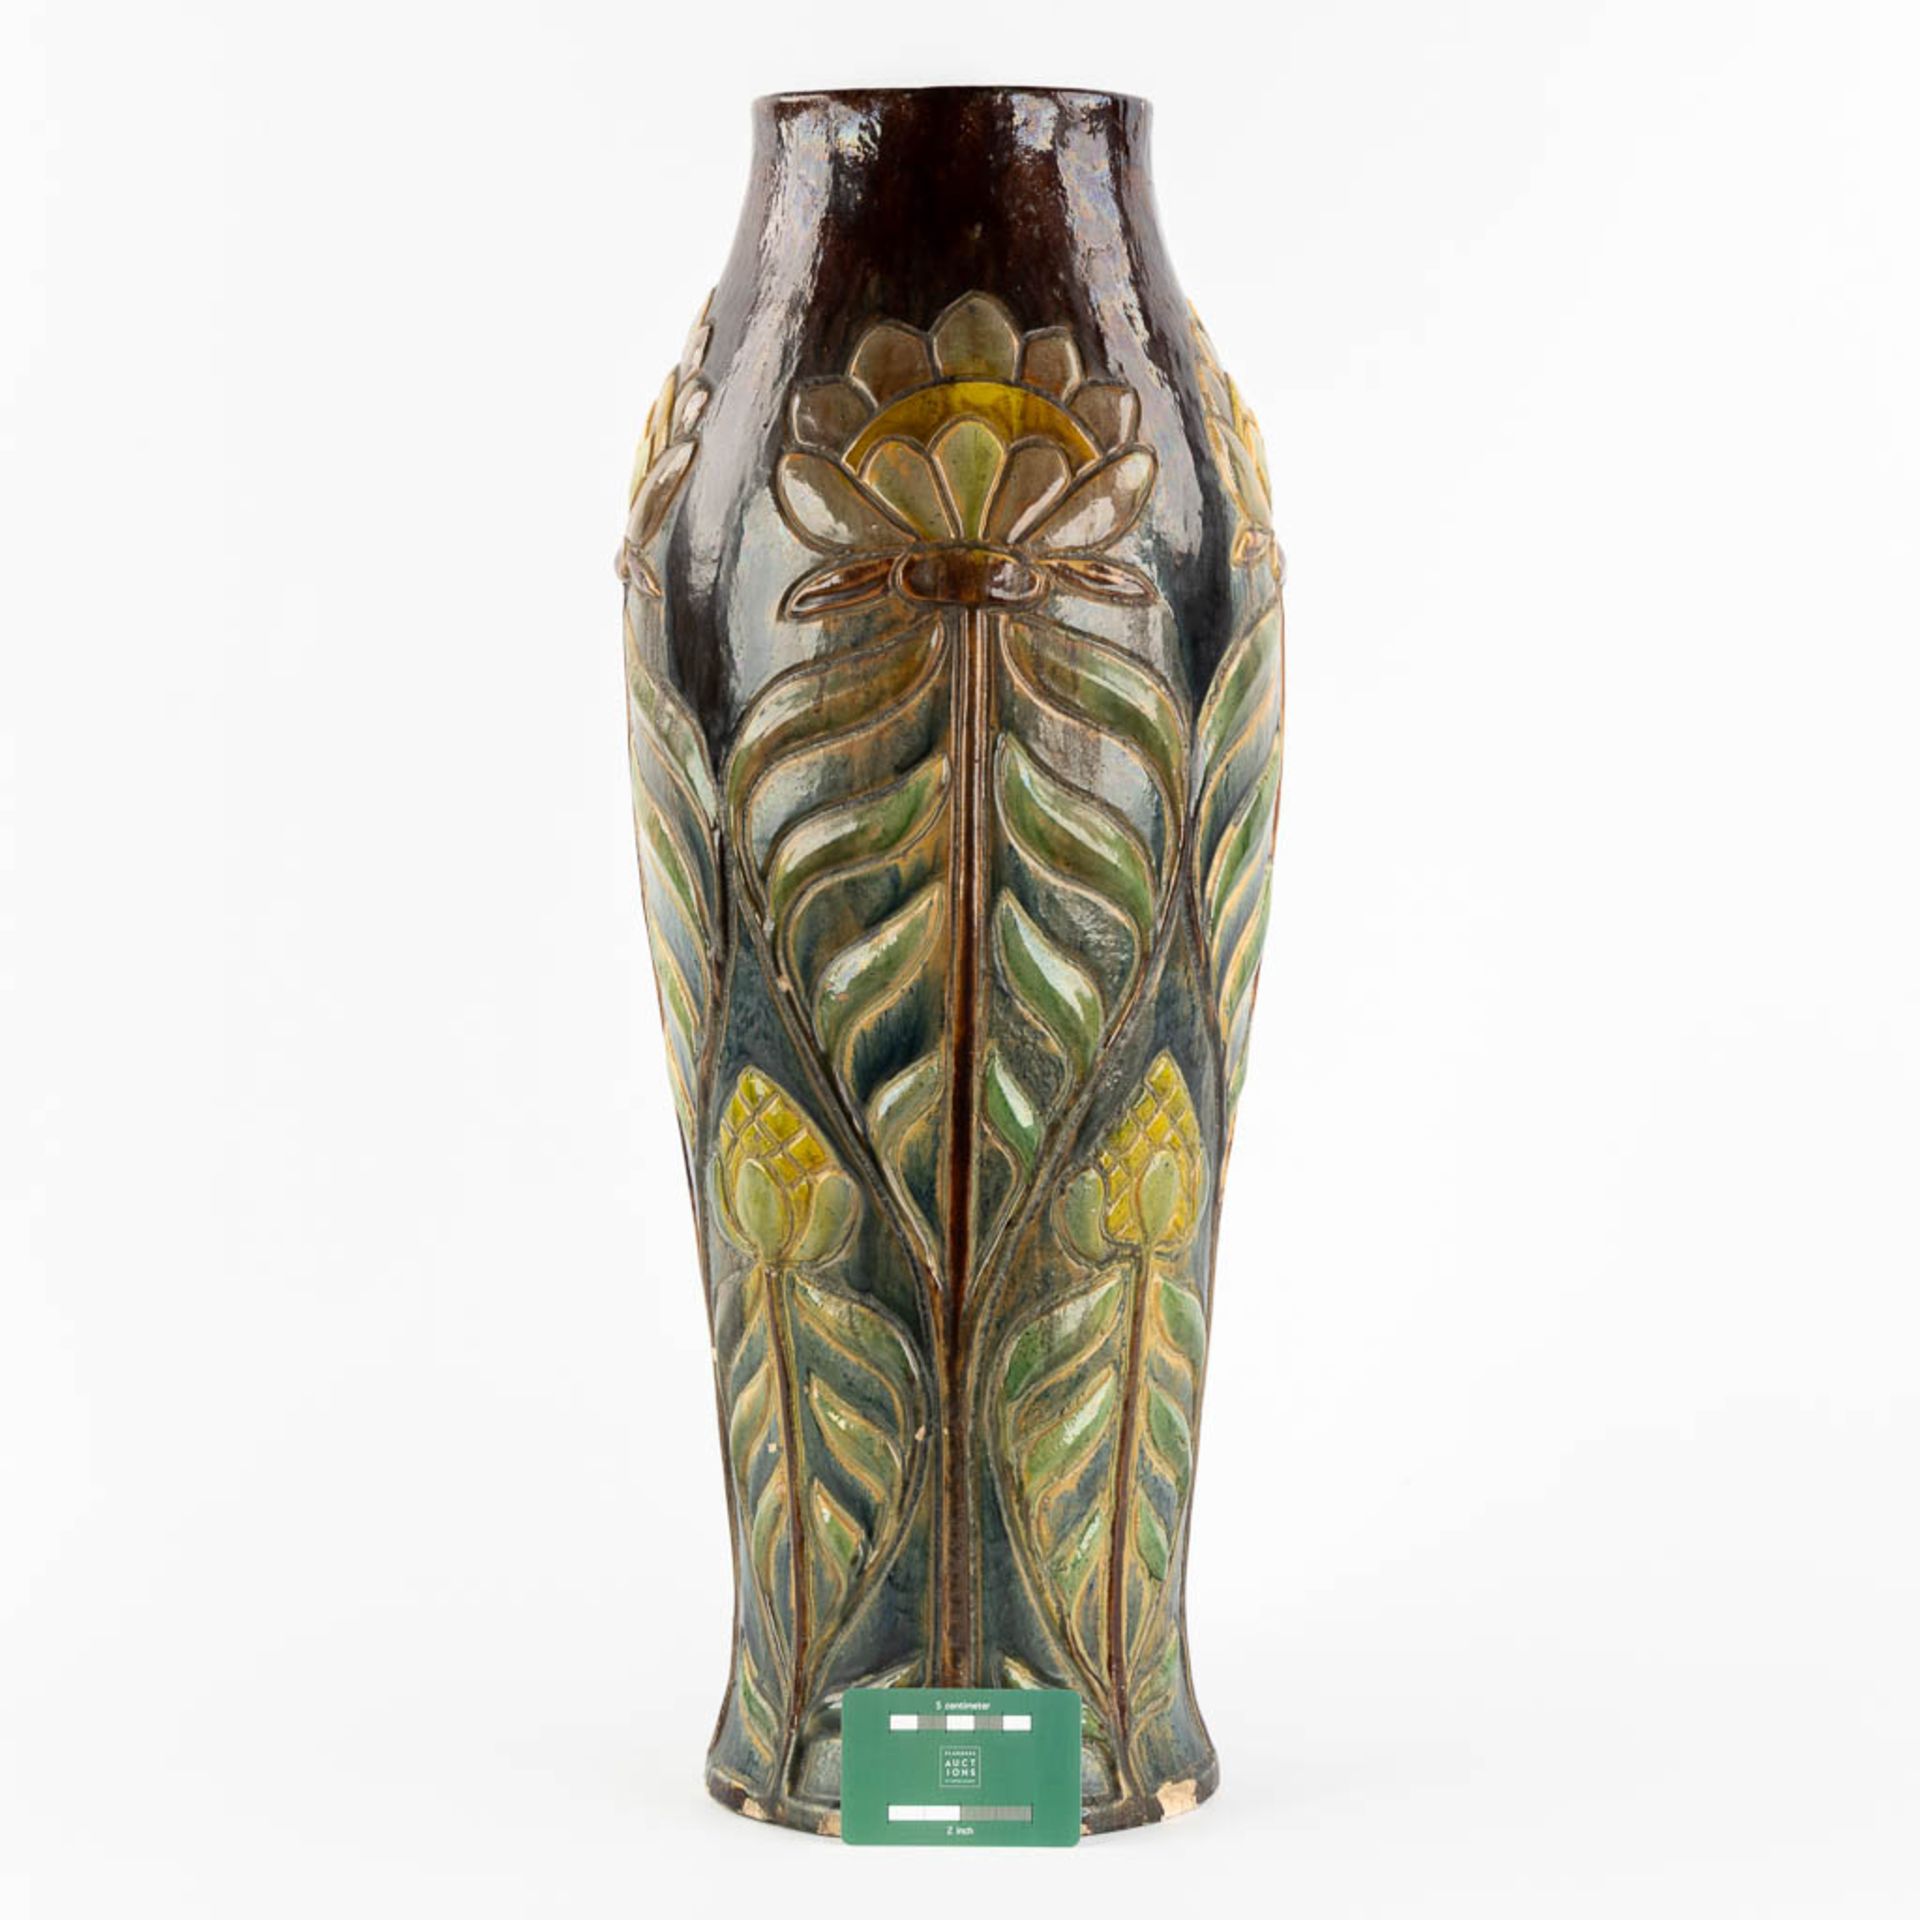 Flemish Earthenware, a large vase, Art Nouveau. (H:61,5 x D:22 cm) - Image 2 of 11